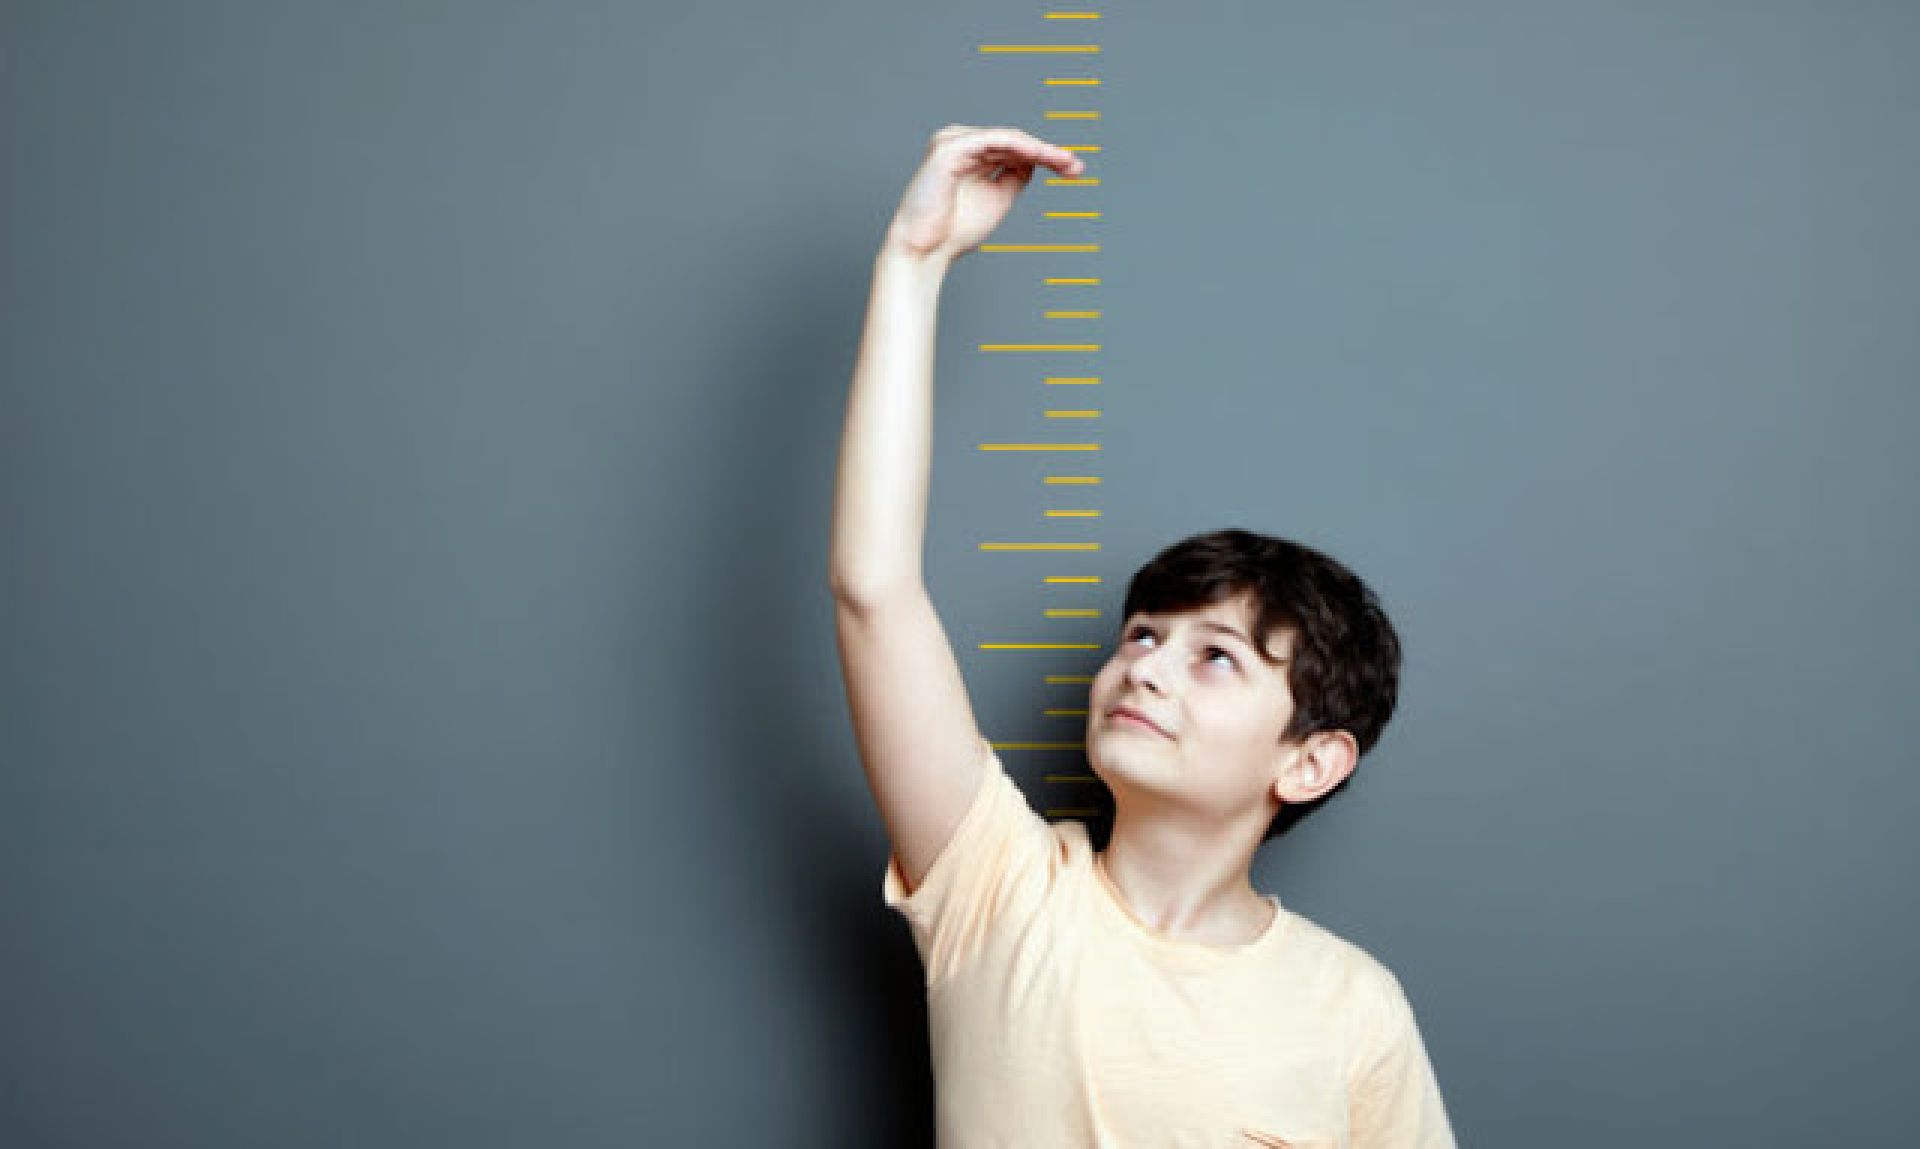 Γίνεται να πάρει κανείς ύψος μετά την εφηβεία; – Δεν φαντάζεστε από τι εξαρτάται